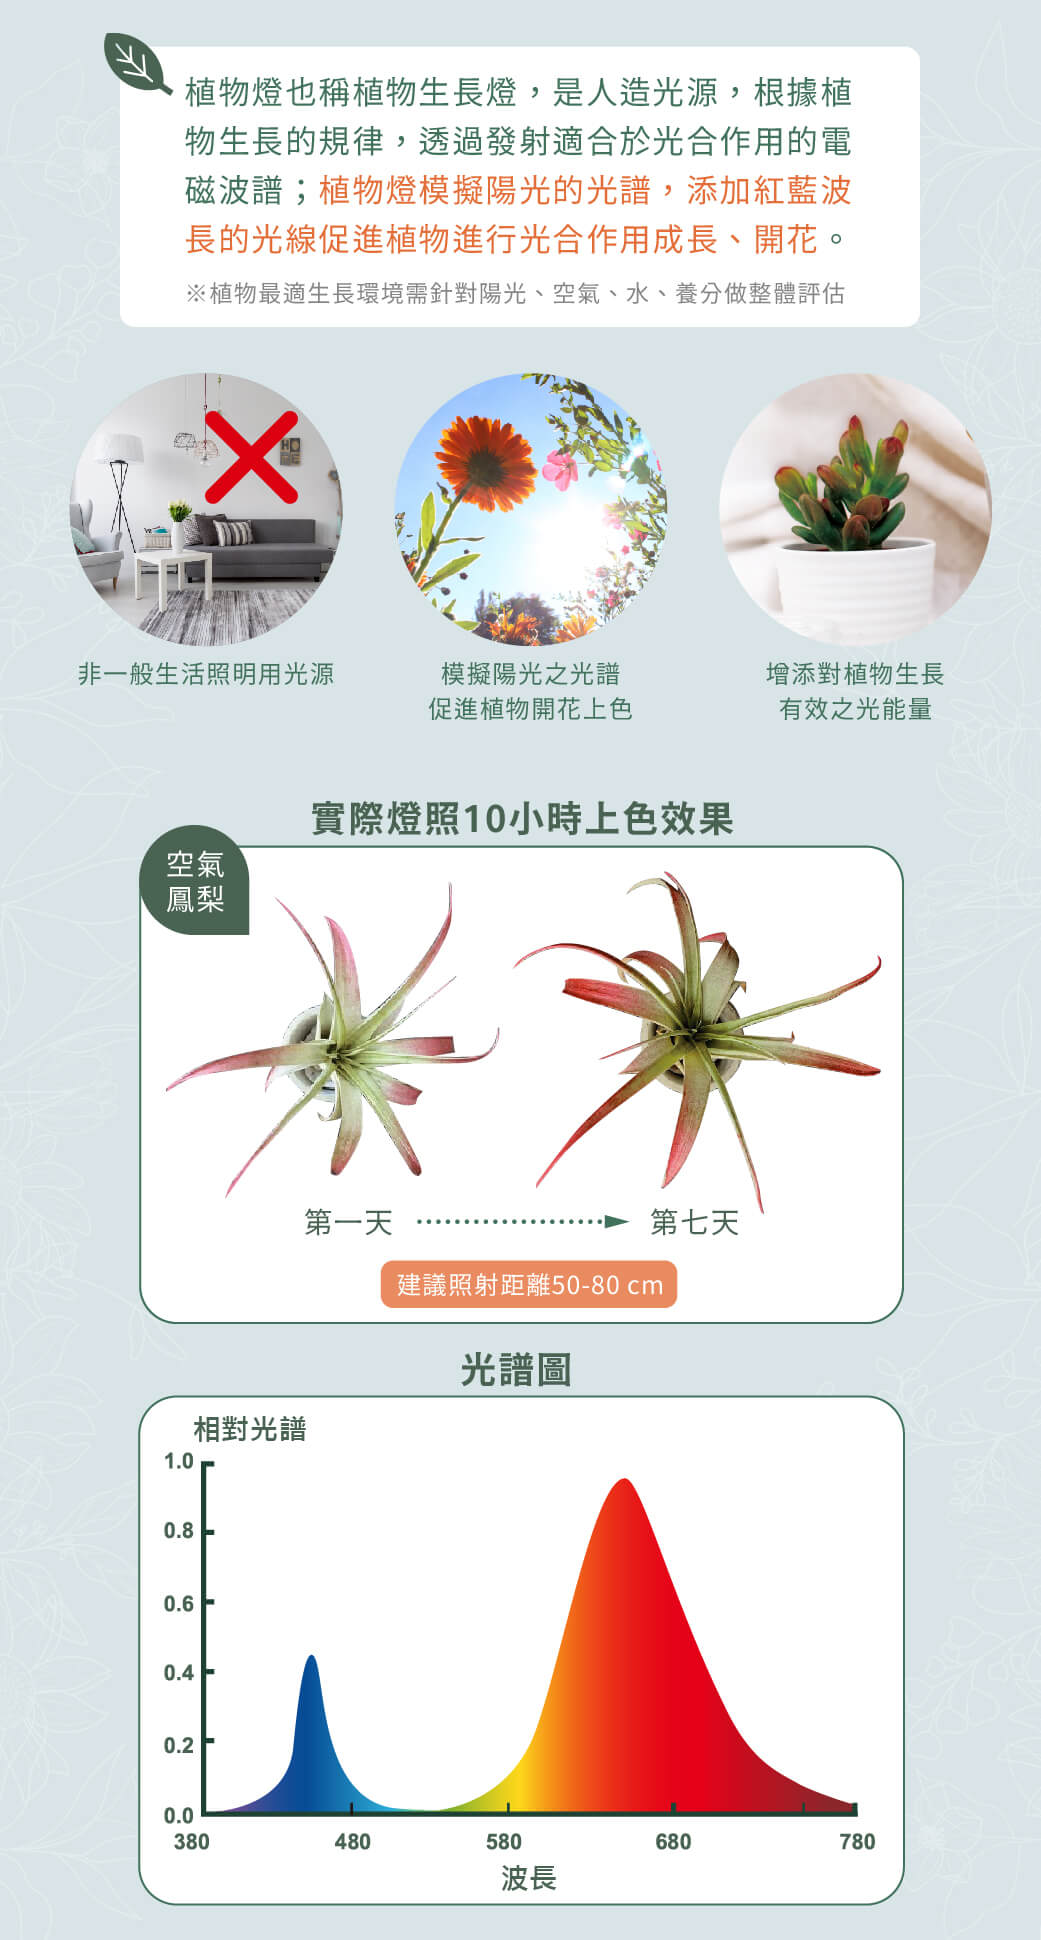 紅藍光譜植物PAR燈_官網圖文-v01_02